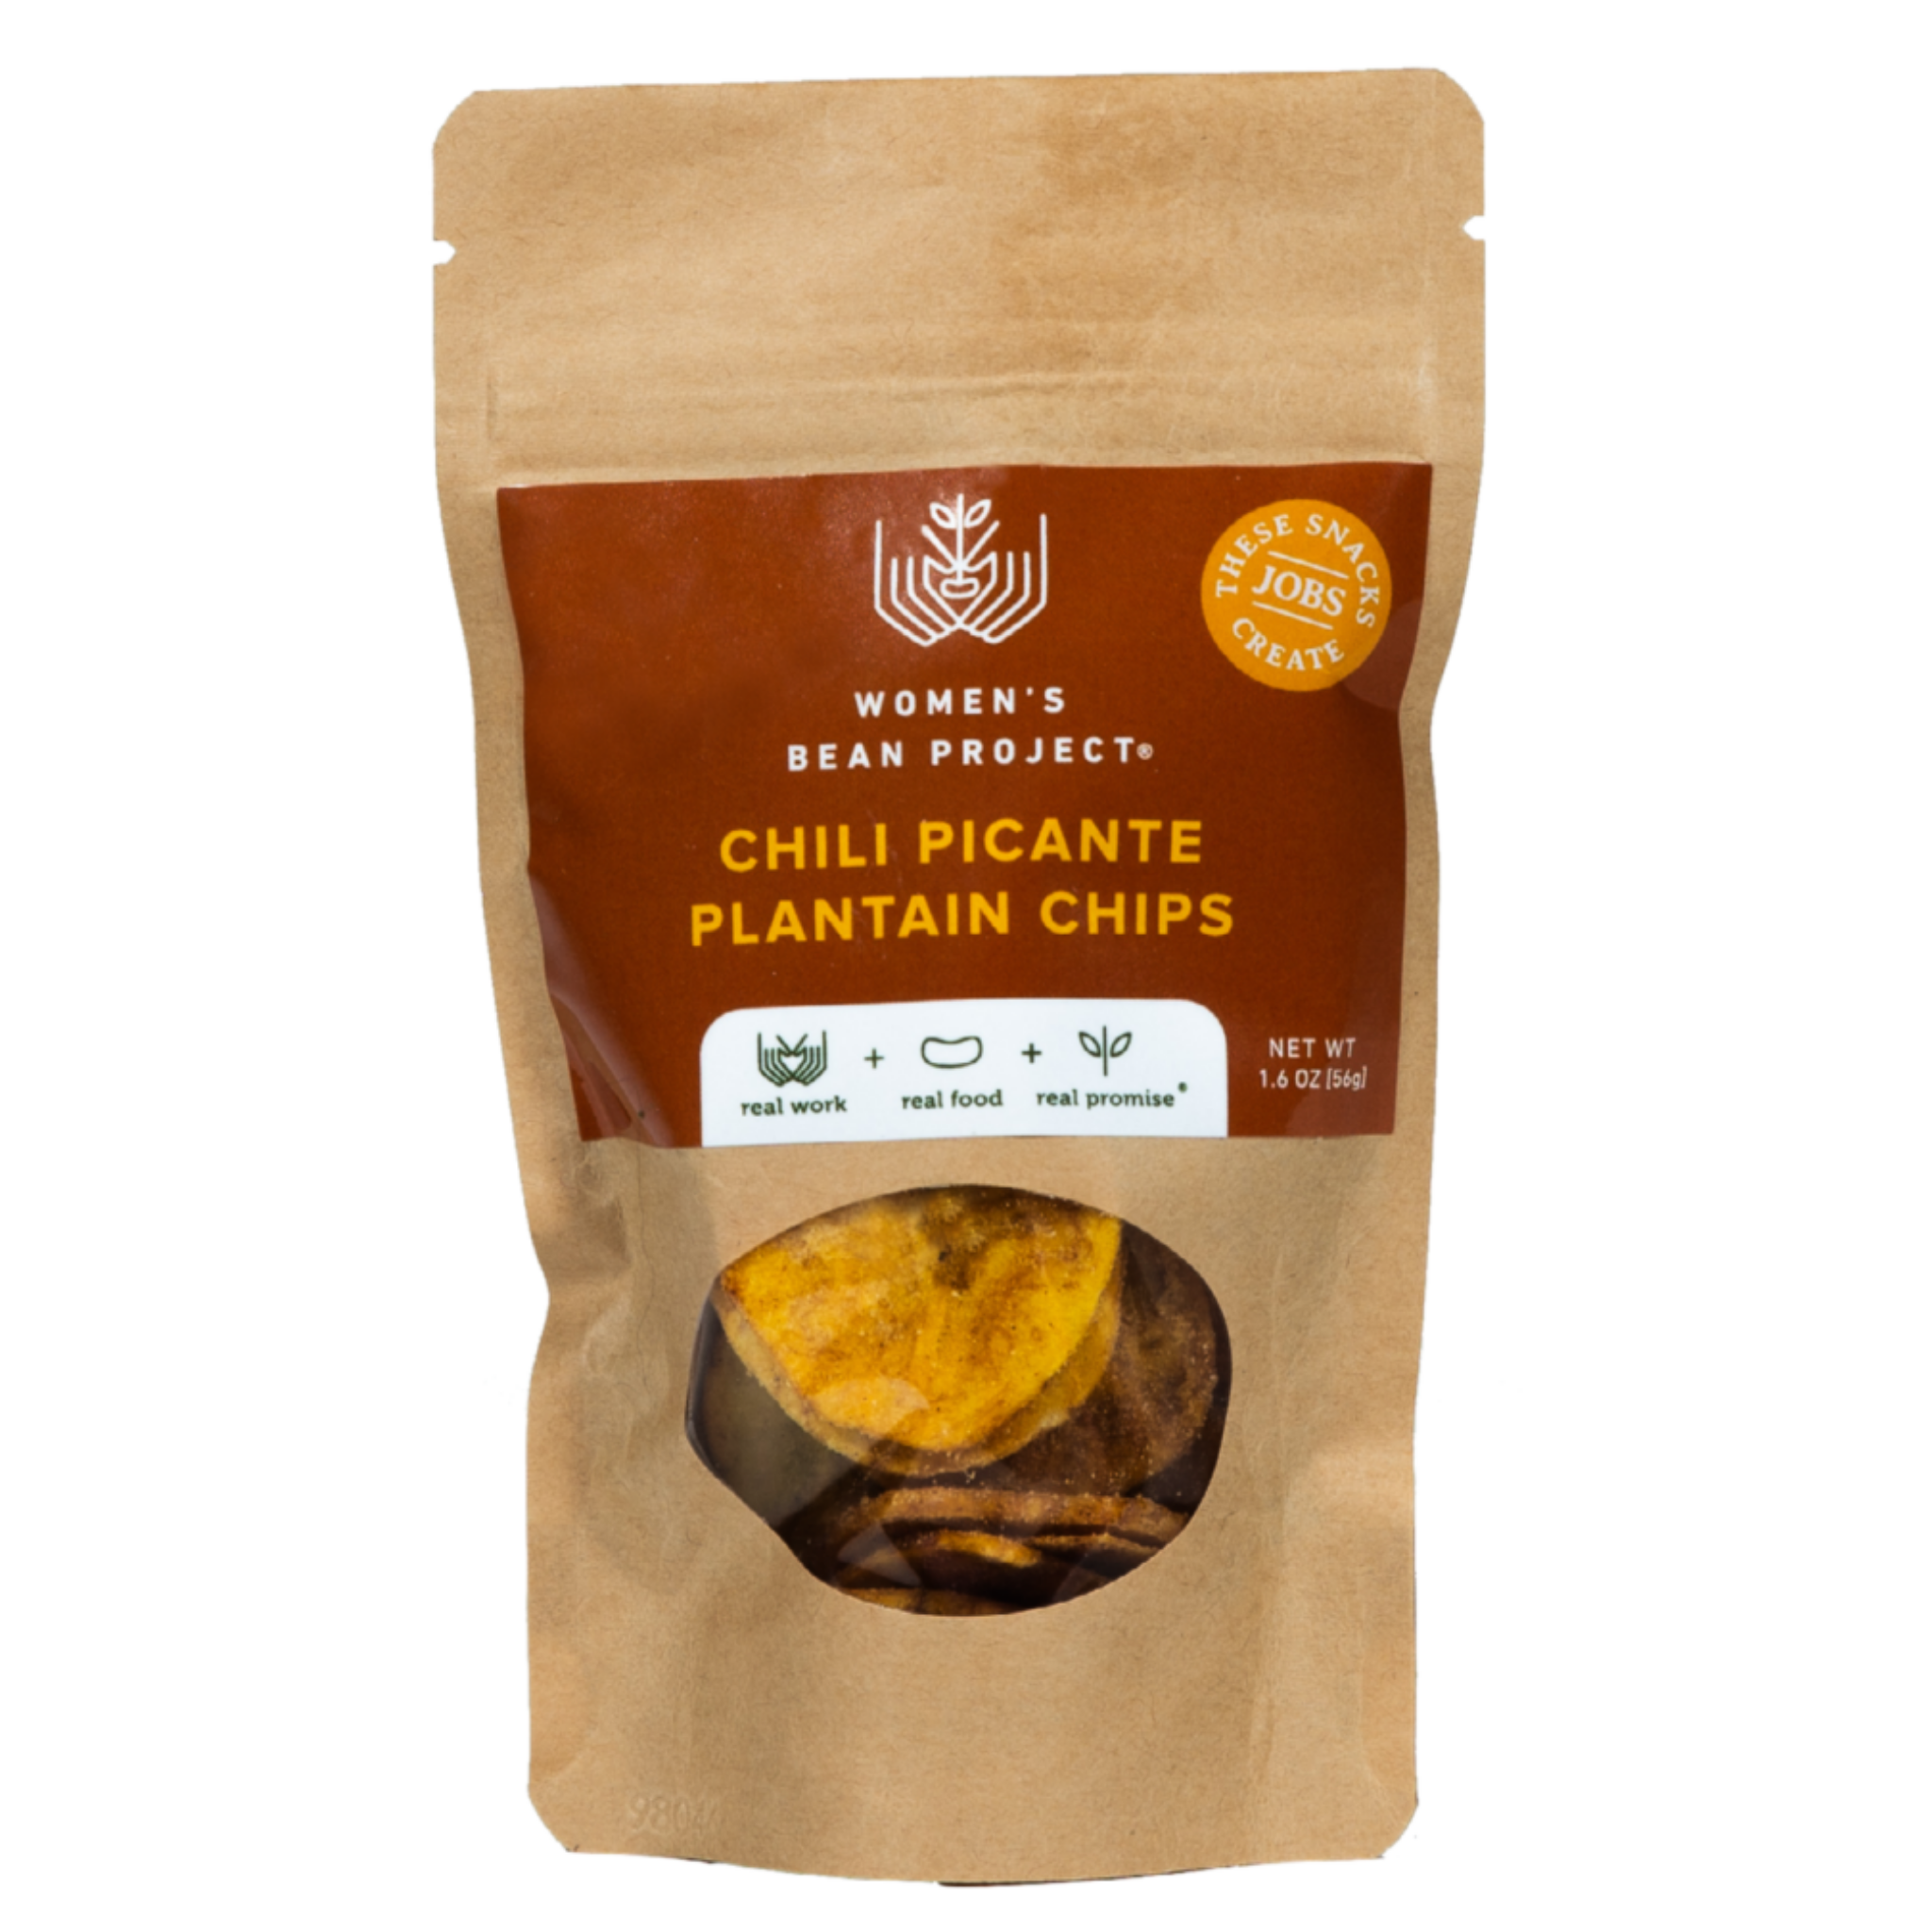 Chili Picante Plantain Chips